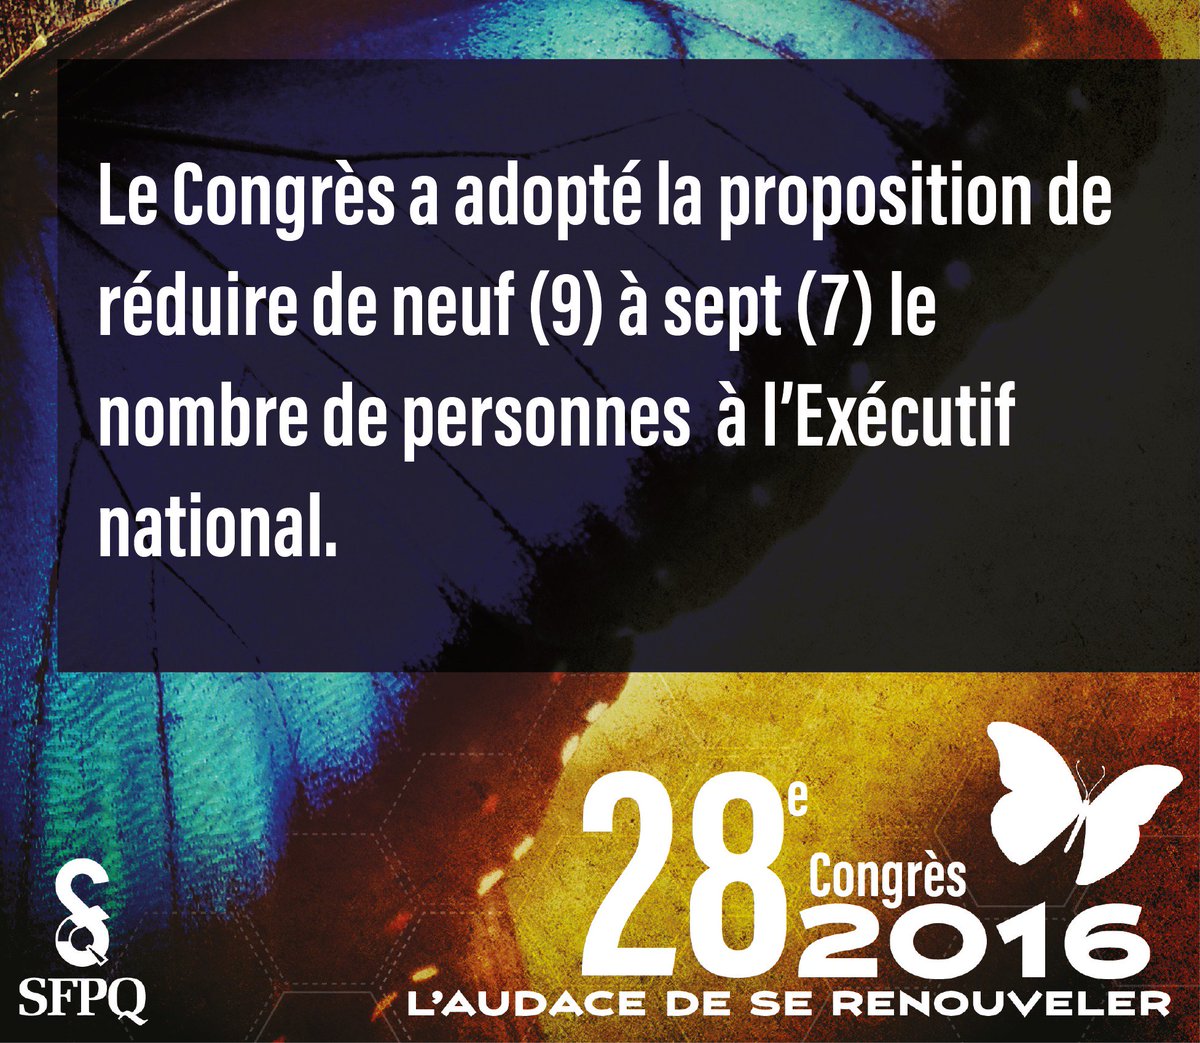 #SFPQCongrès Le Congrès a adopté la proposition de réduire de 9 à 7 le nombre de personnes à l'Exécutif national.